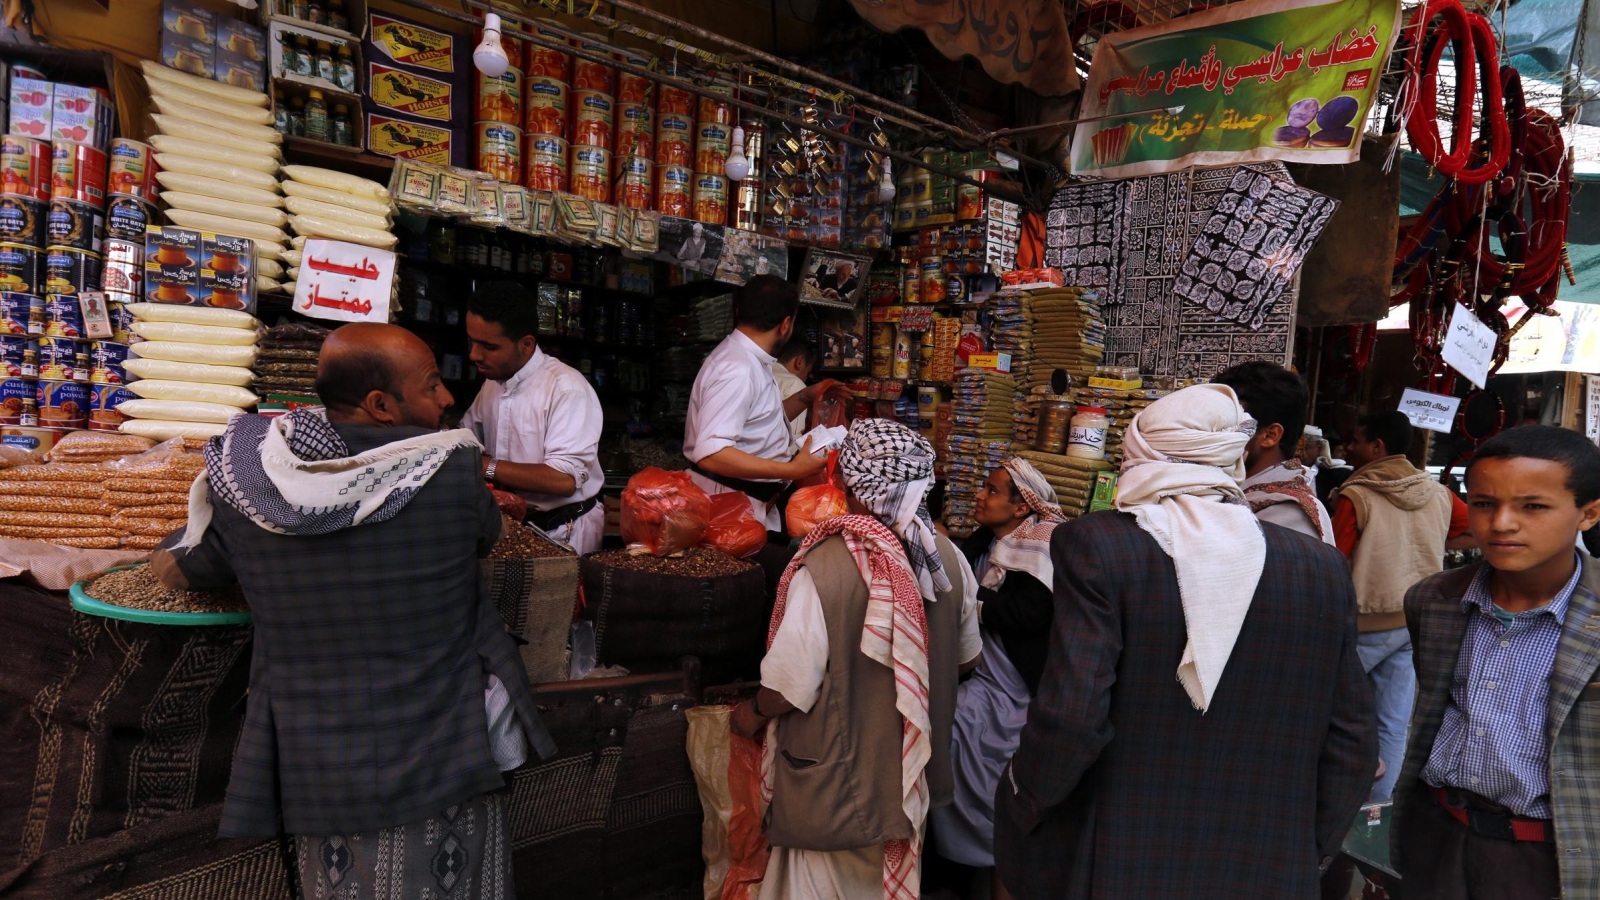 سكان صنعاء يترقبون مزيدا من الضغوط المعيشية (الأوروبية)